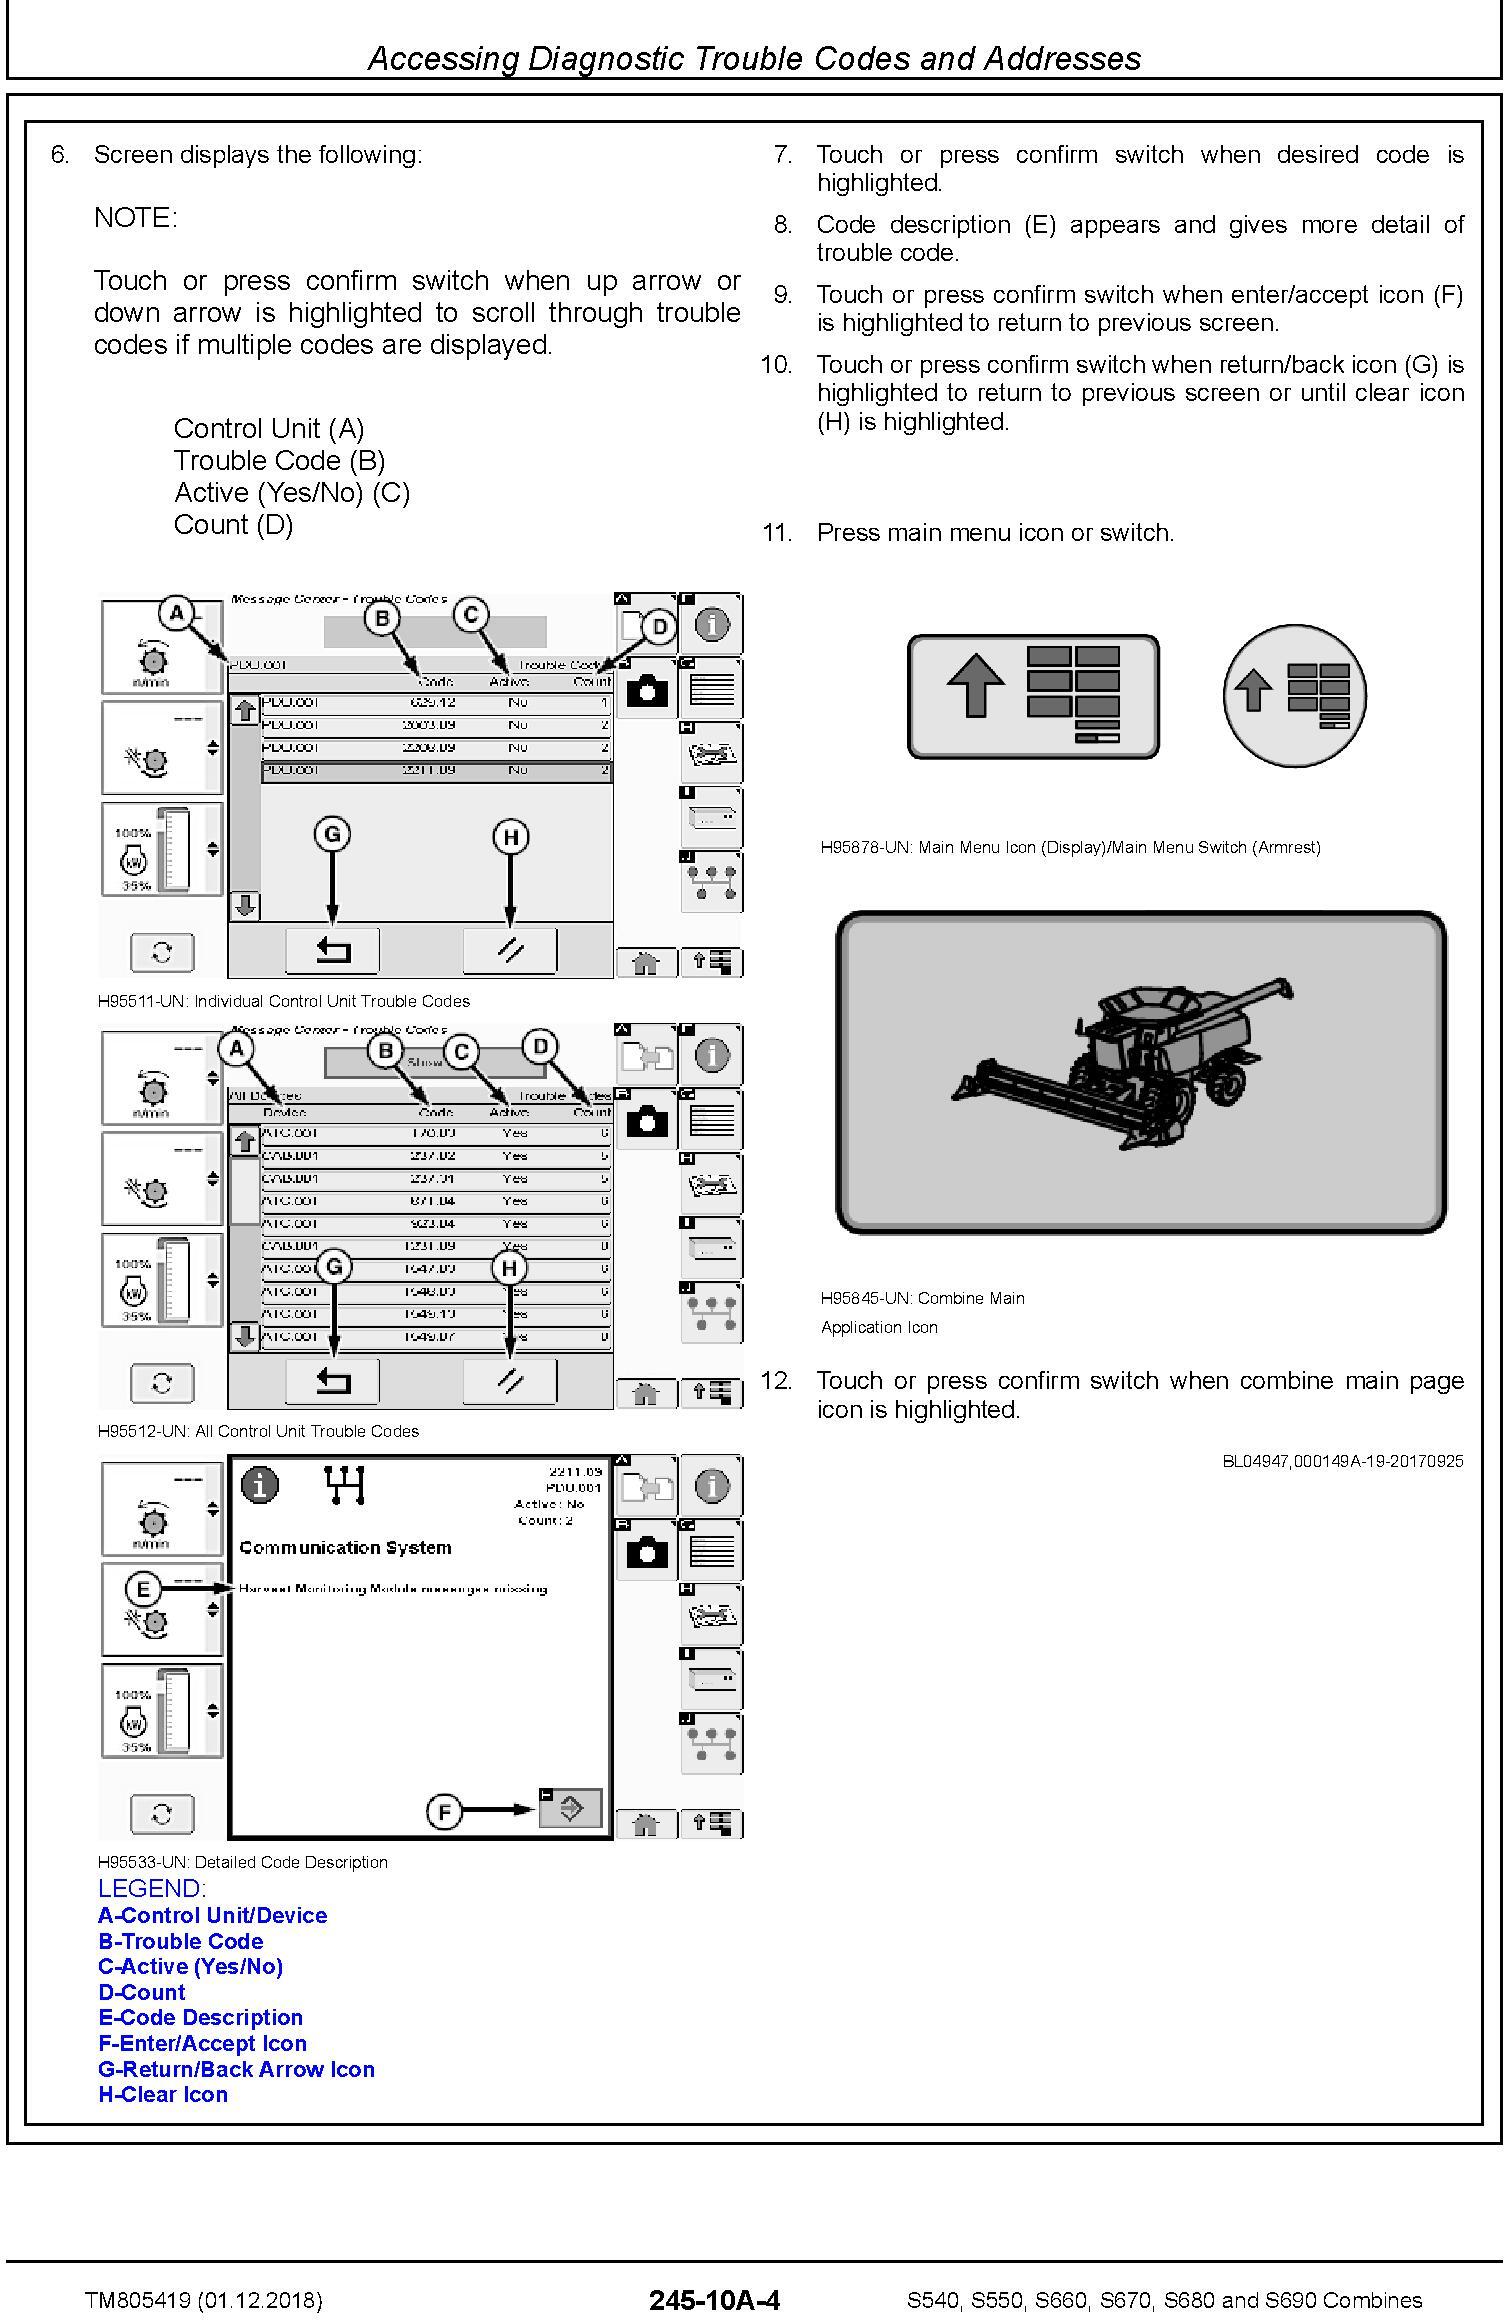 John Deere S540, S550, S660, S670, S680, S690 Combines (SN.120100-) Diagnostic Manual (TM805419) - 3